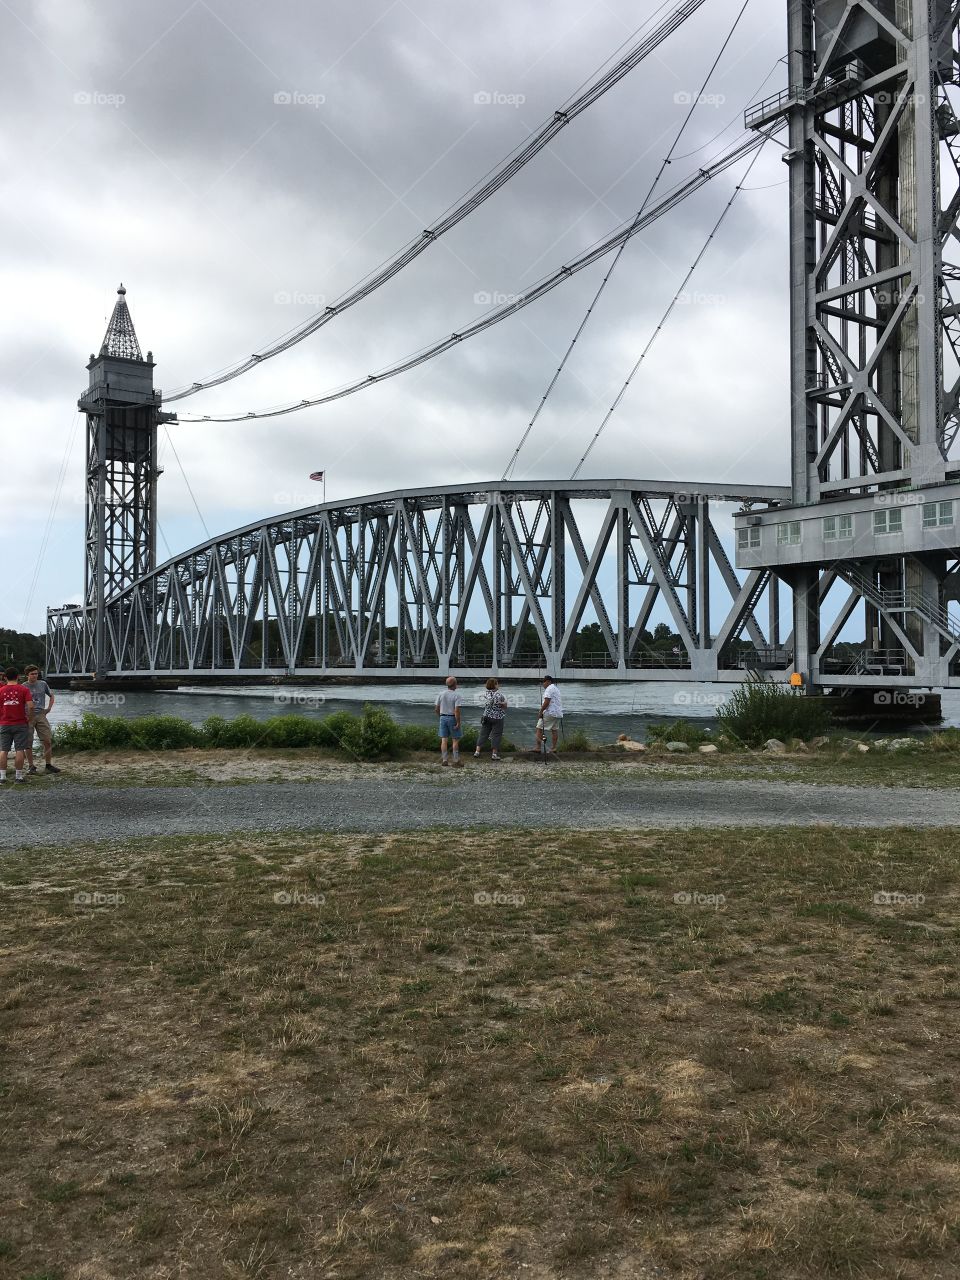 Bridge down 